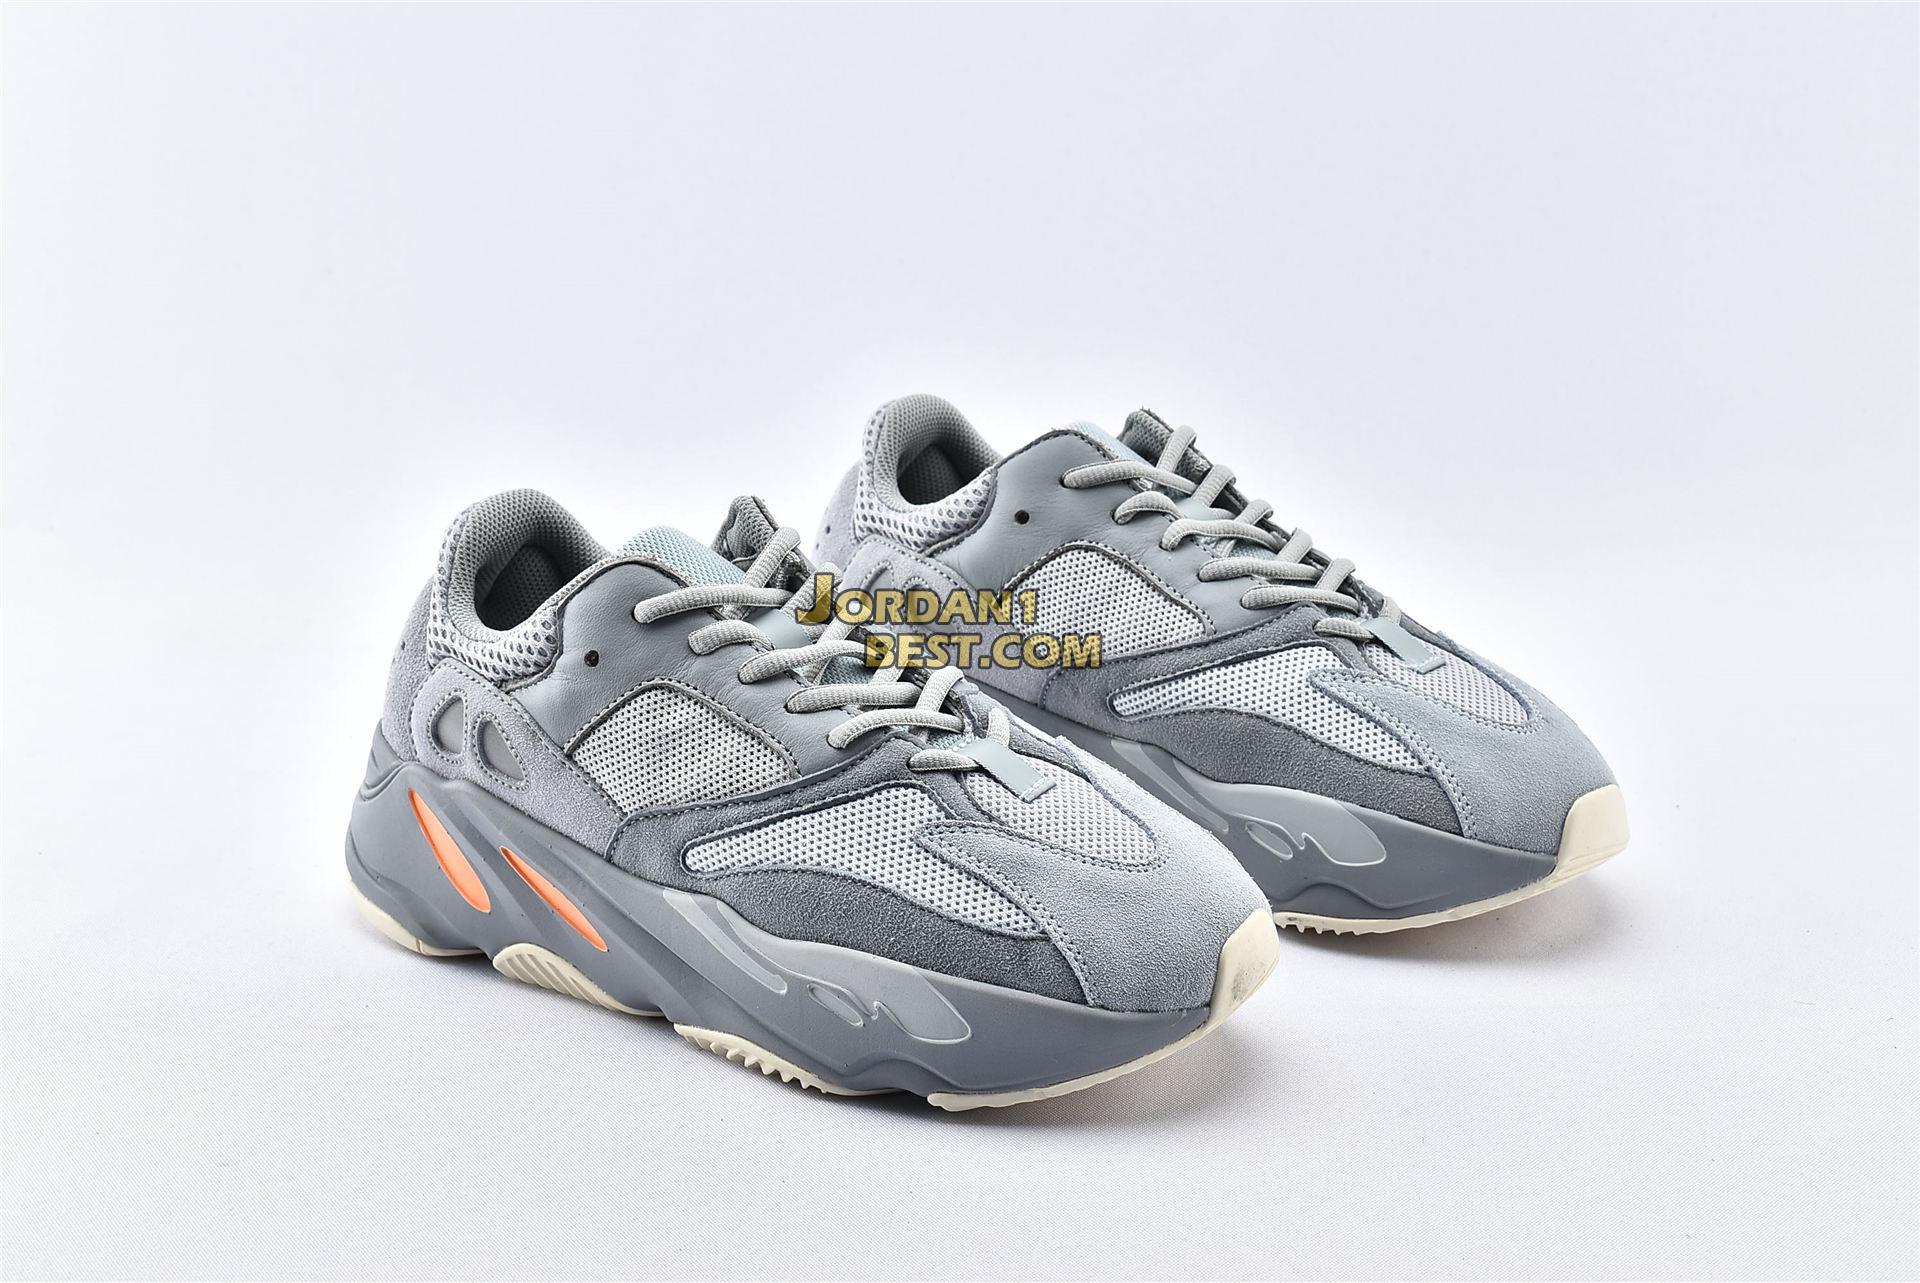 Adidas Yeezy Boost 700 "Grey-Inertia" EG7597